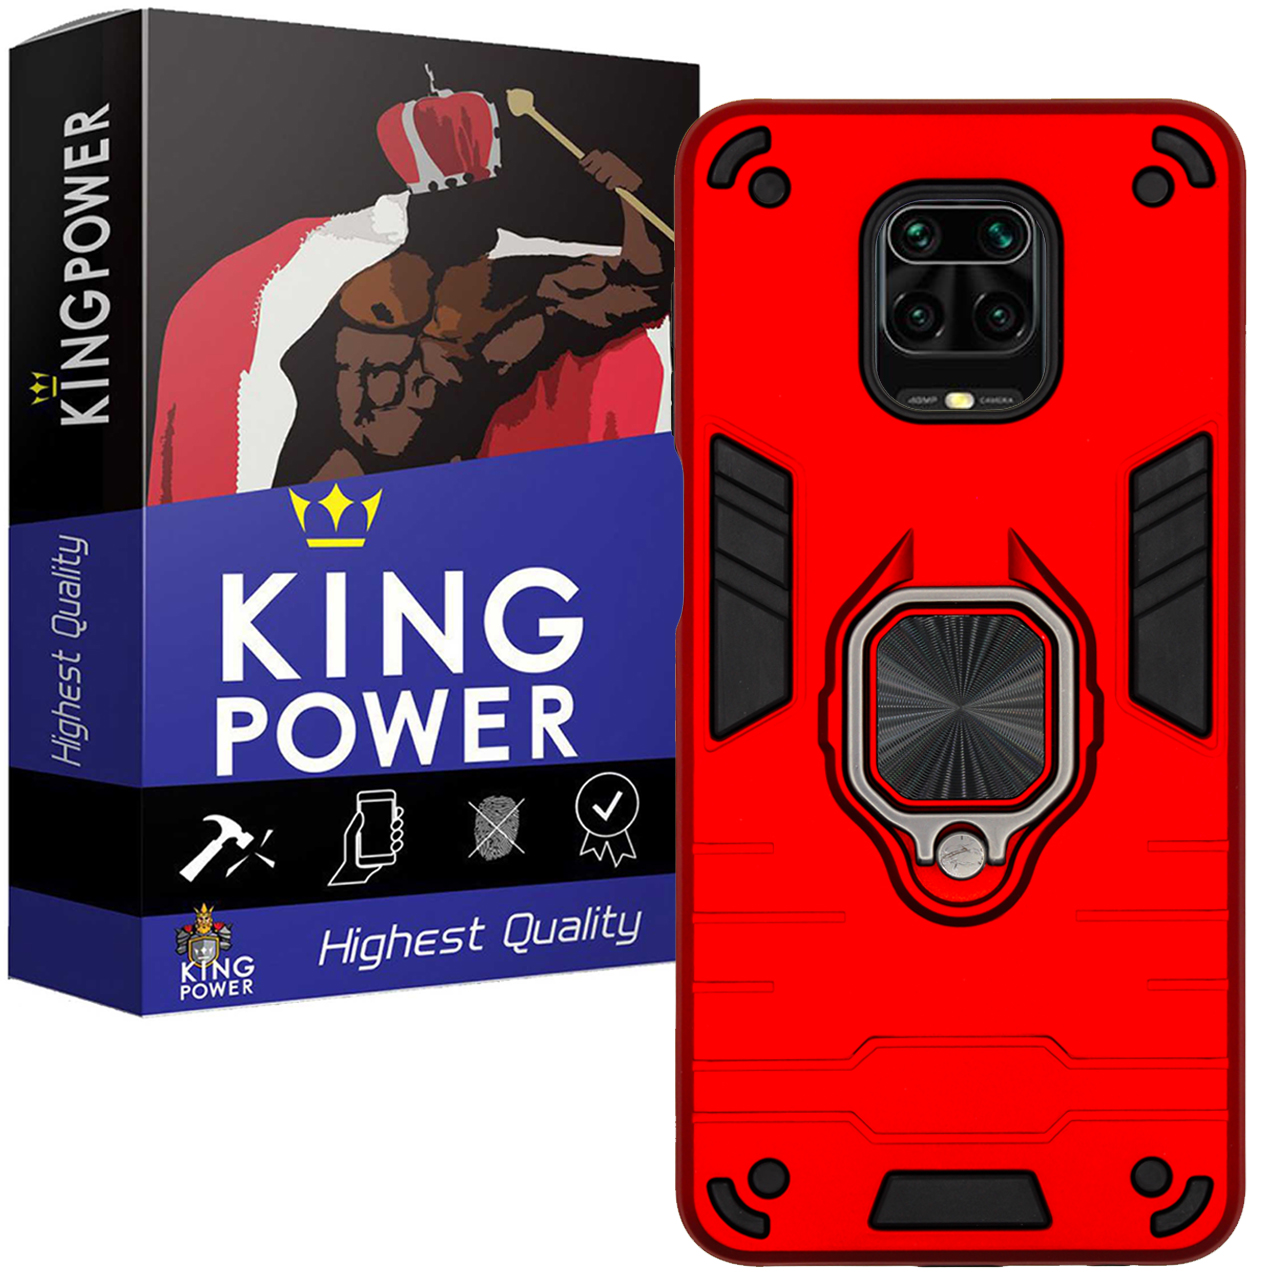 کاور کینگ پاور مدل ASH22 مناسب برای گوشی موبایل شیائومی Redmi Note 9S / Note 9 Pro / Note 9 Pro Max